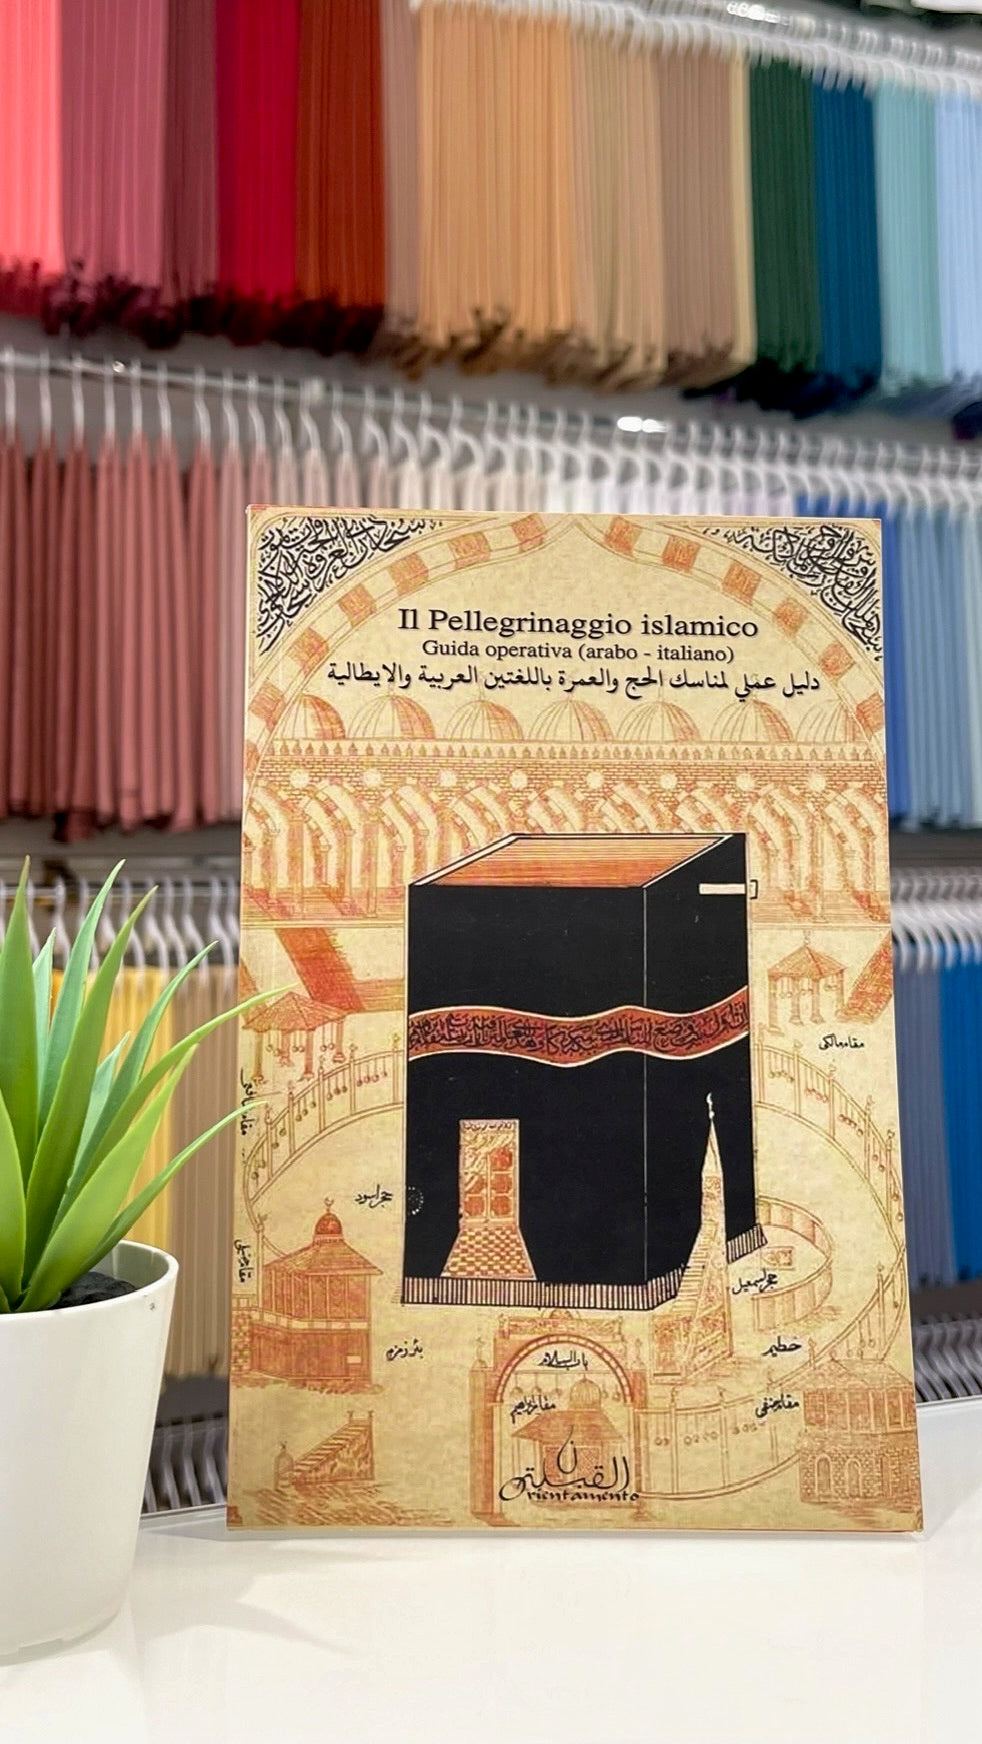 Il Pellegrinaggio islamico - Guida operativa (arabo - italiano) - Hijab Paradise - come svolgere il pellegrinaggio